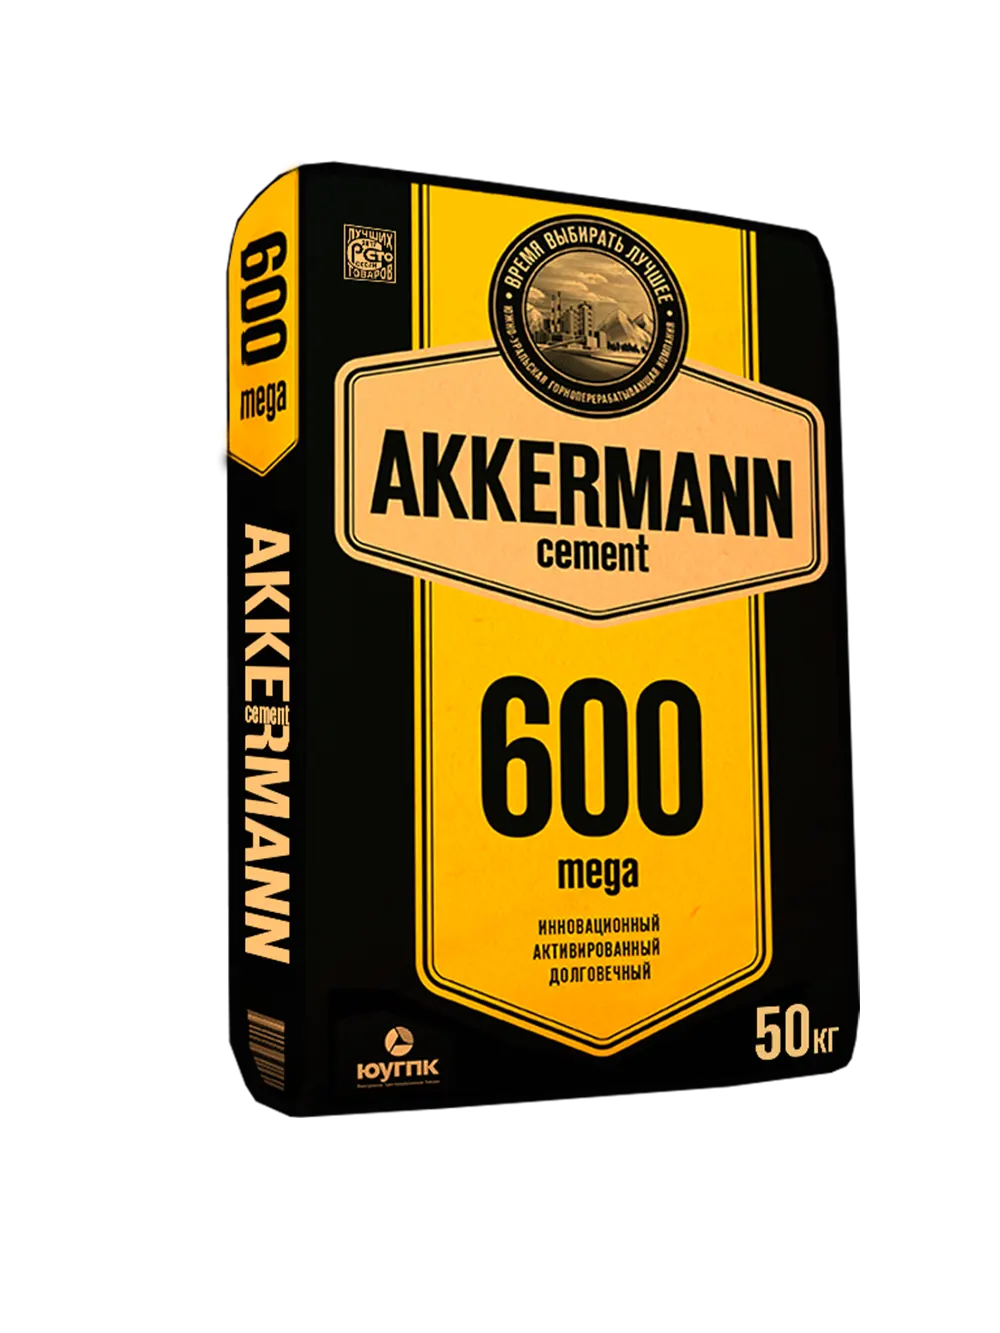 akkerman602